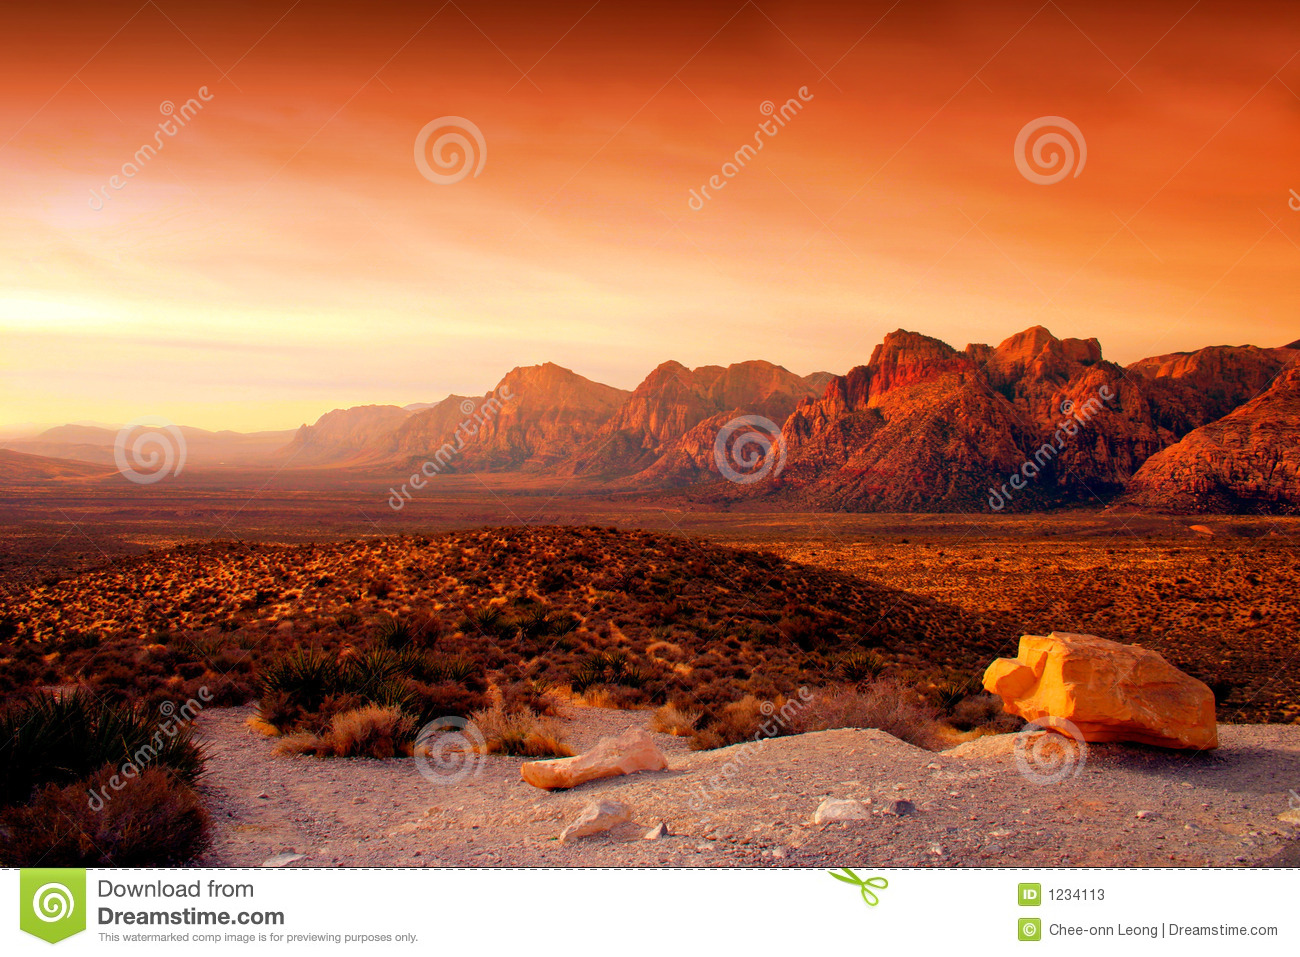 Red Rock Canyon, Nevada Stock Photos.